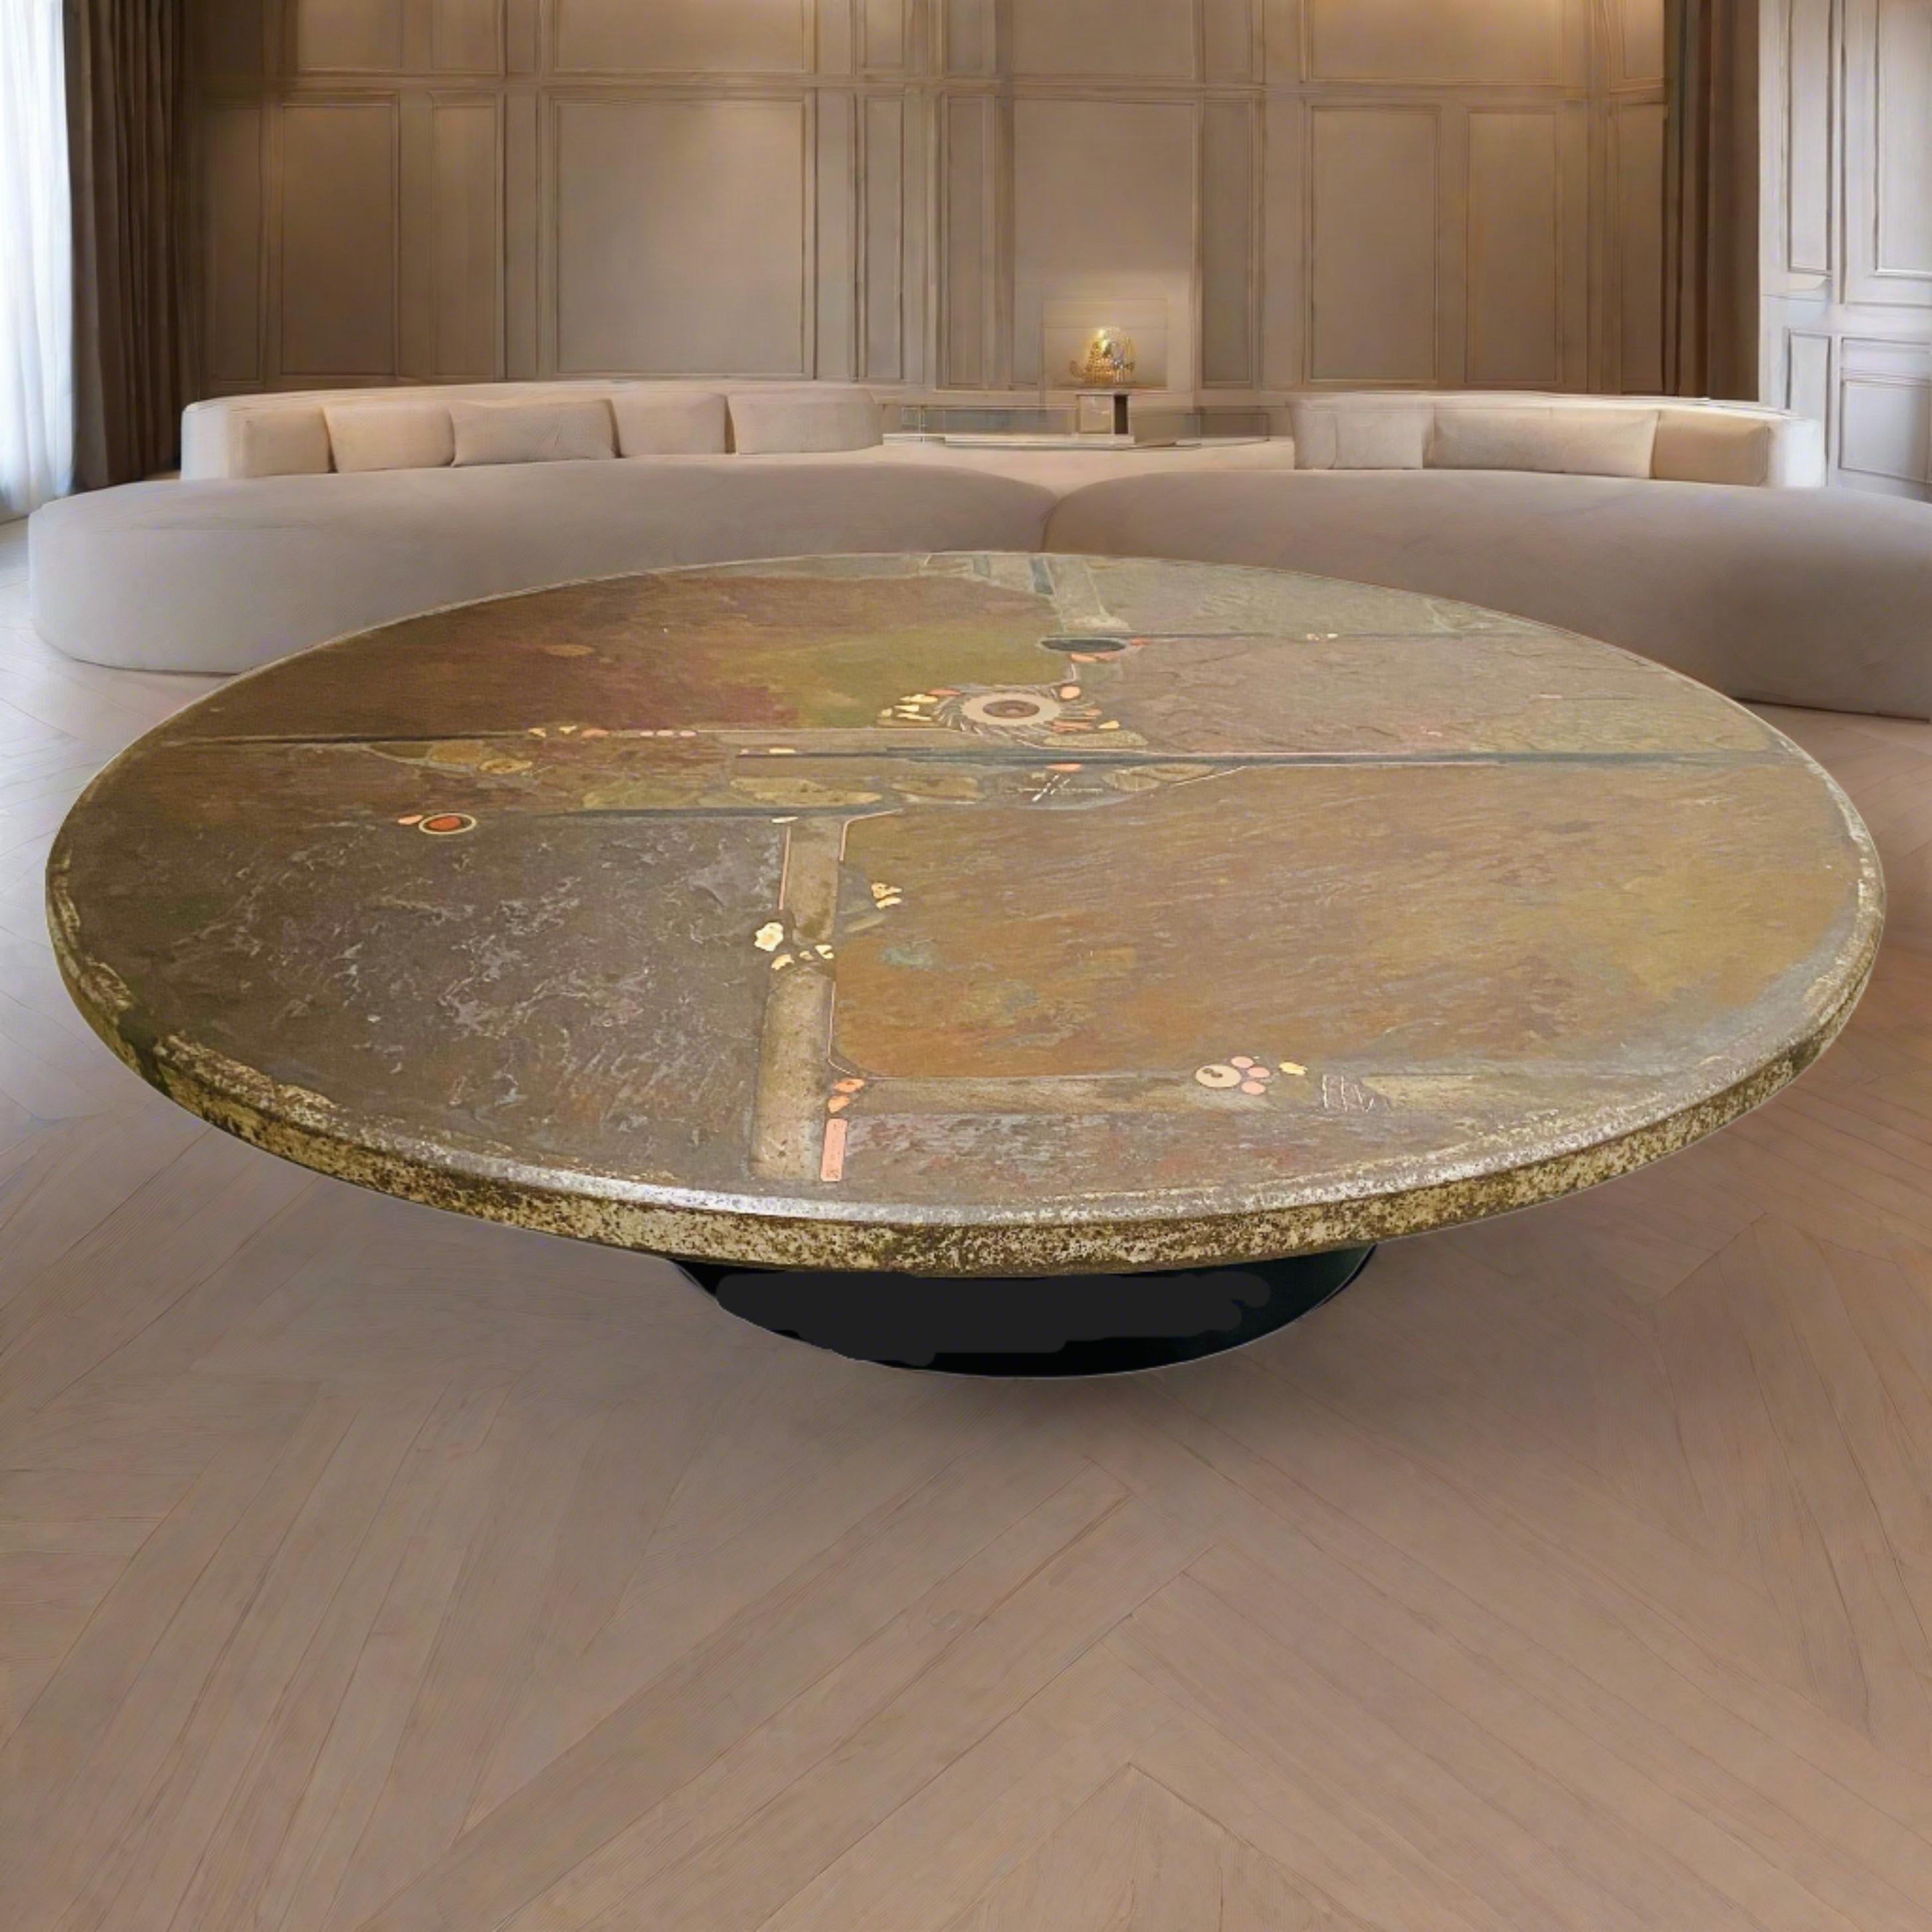 Table basse brutaliste conçue et fabriquée par Paul Kingma, Pays-Bas 1985.

Voici la table basse ronde brutaliste du célèbre sculpteur Paul Kingma, fabriquée aux Pays-Bas en 1985. Cette pièce emblématique témoigne de l'esthétique et du savoir-faire